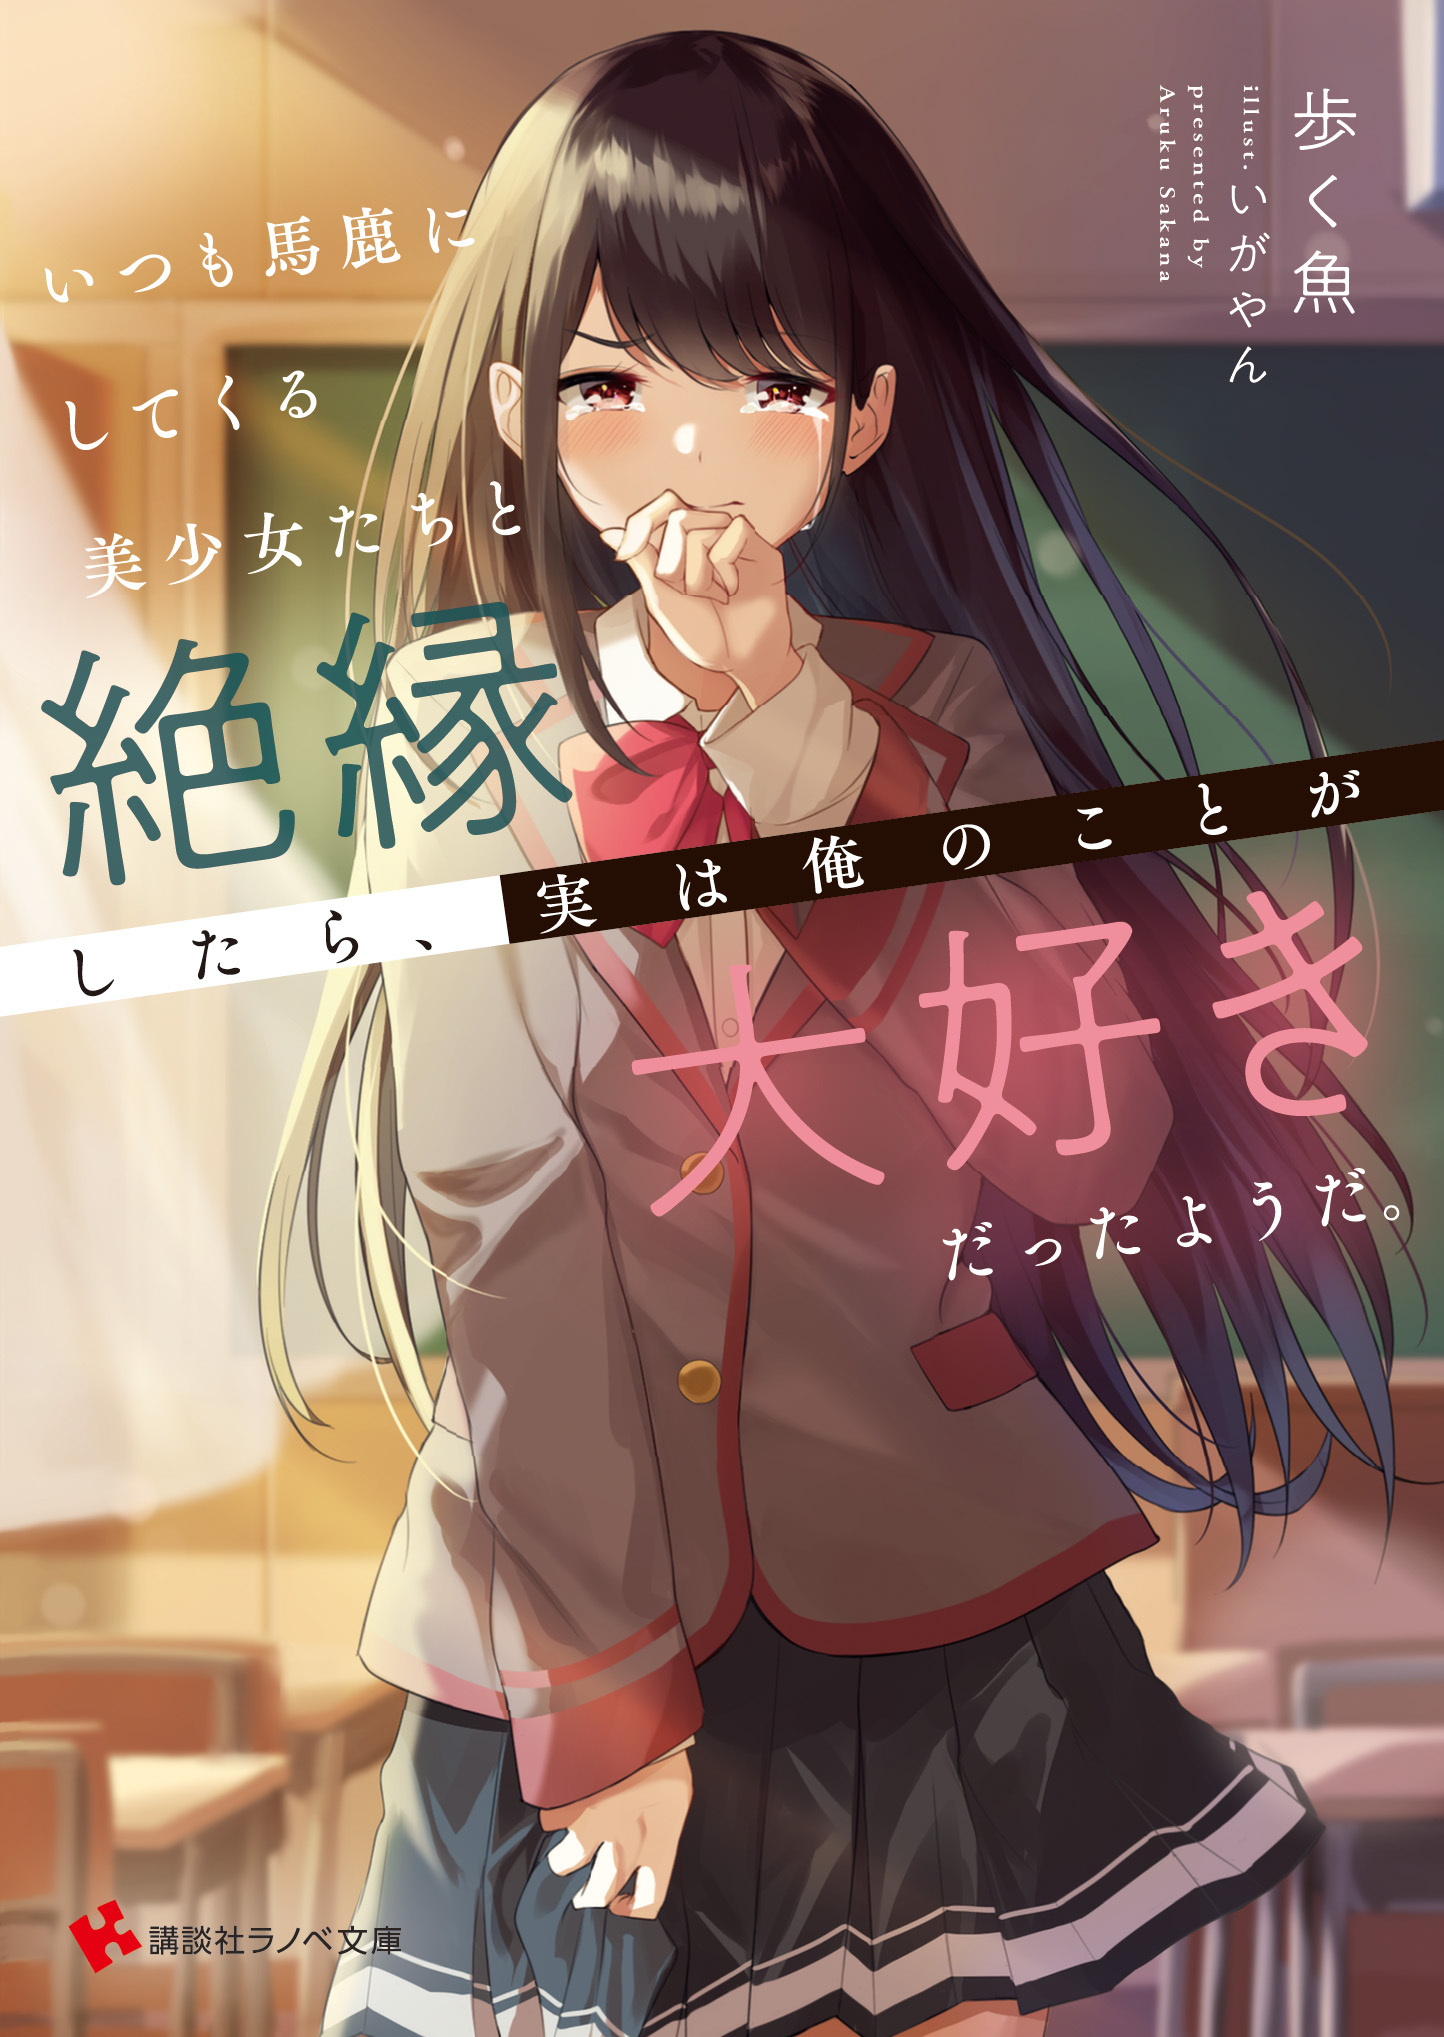 Read Tensei Shitara Ken Deshita Manga on Mangakakalot